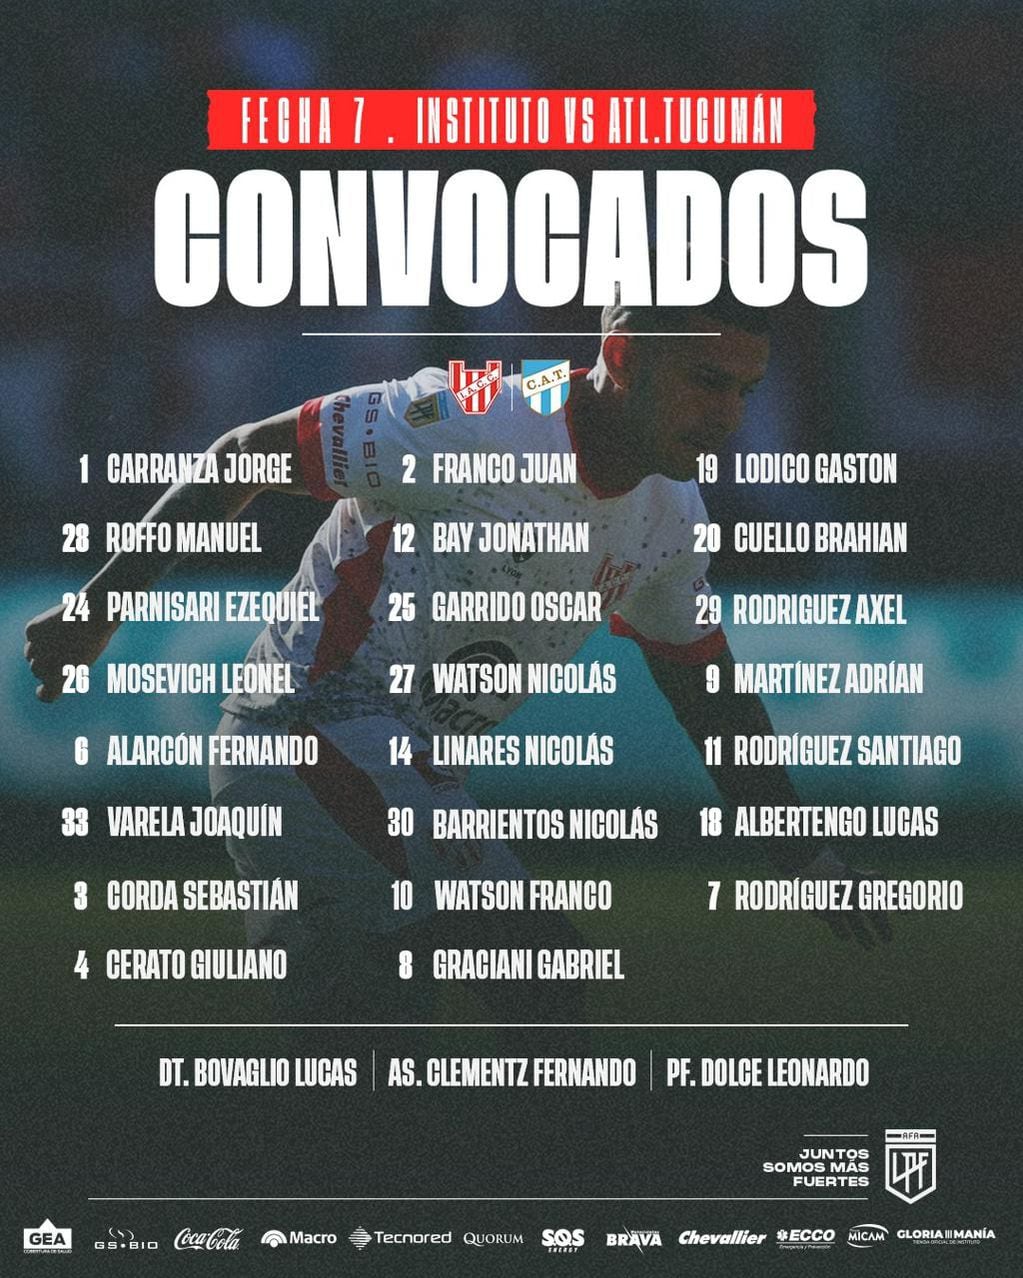 La lista de convocados para el partido por la séptima fecha contra Atlético Tucumán.